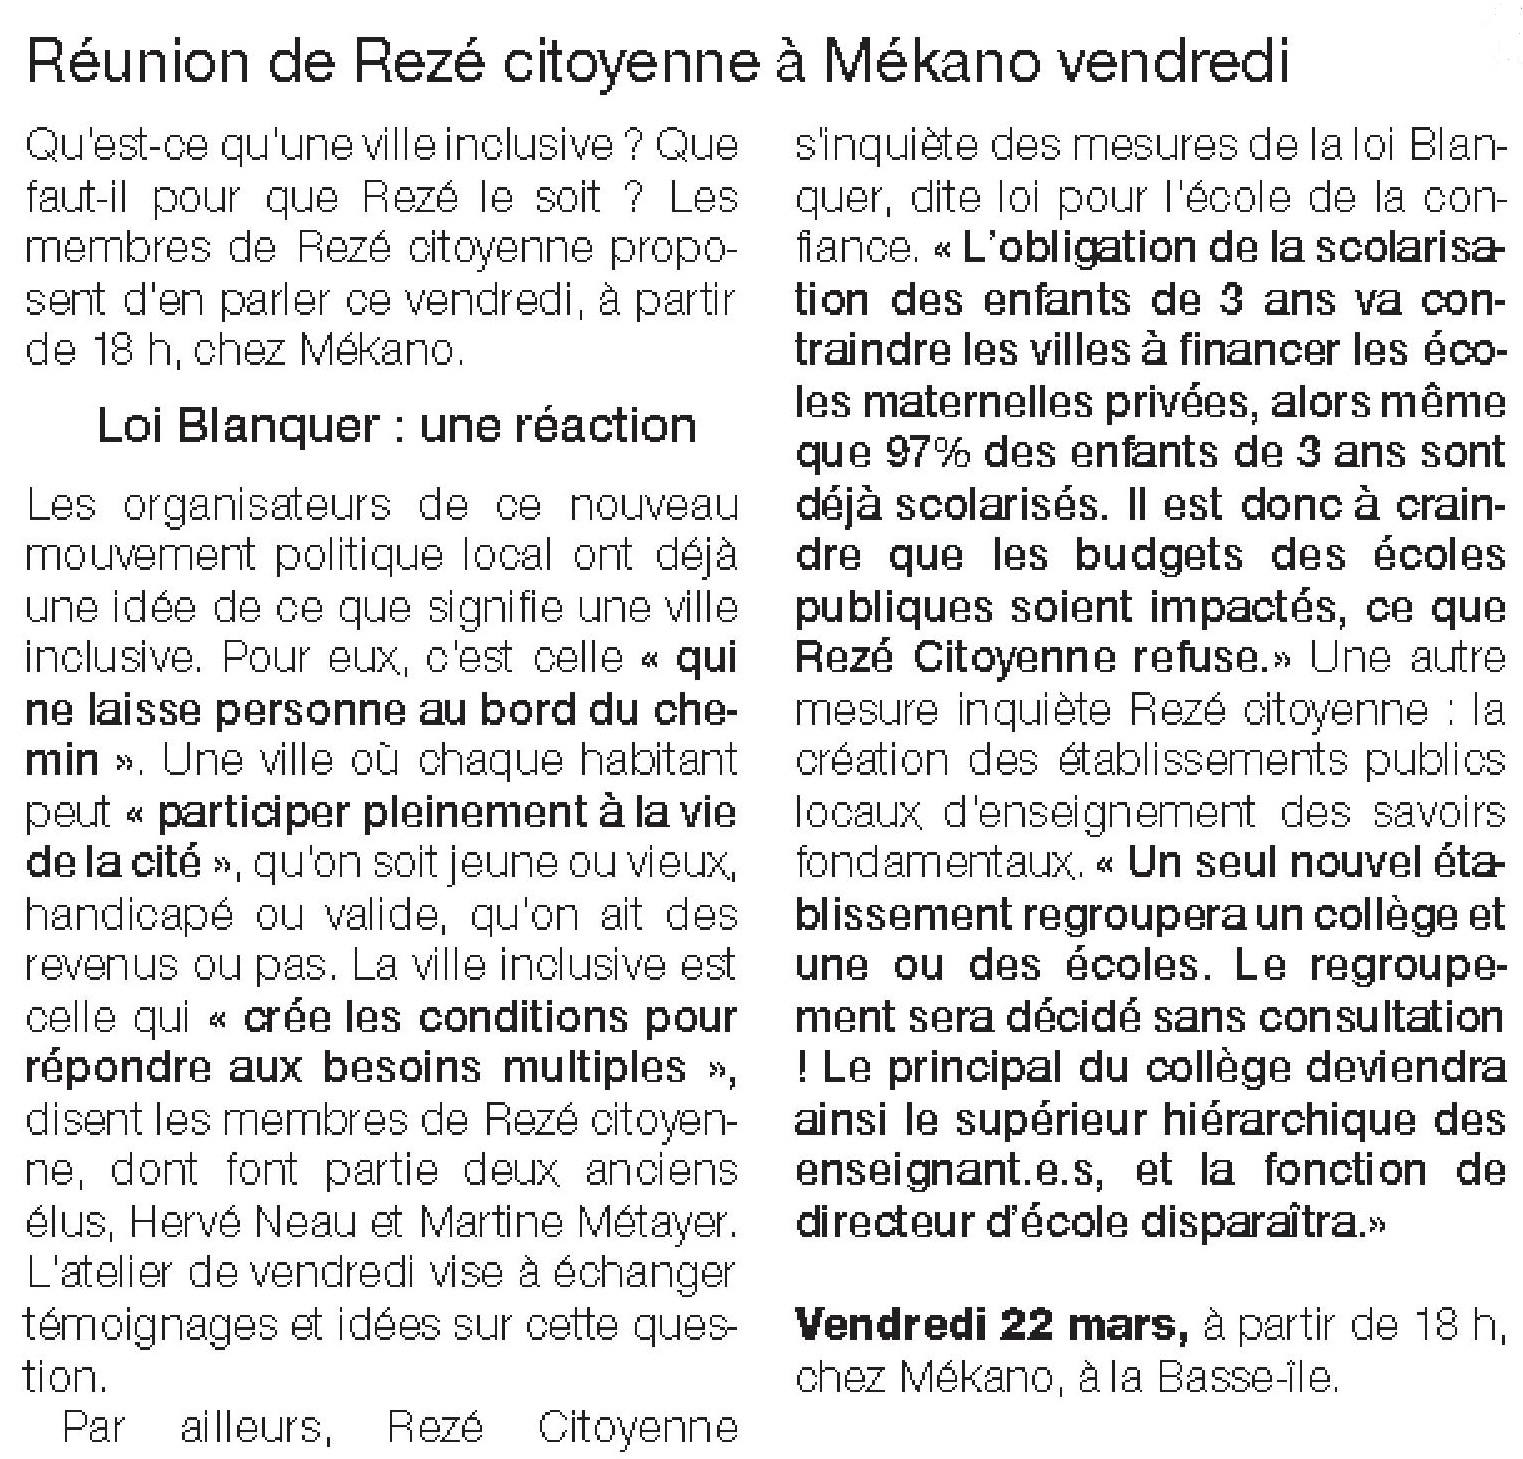 reunion-mekano-reze-citoyenne-OF